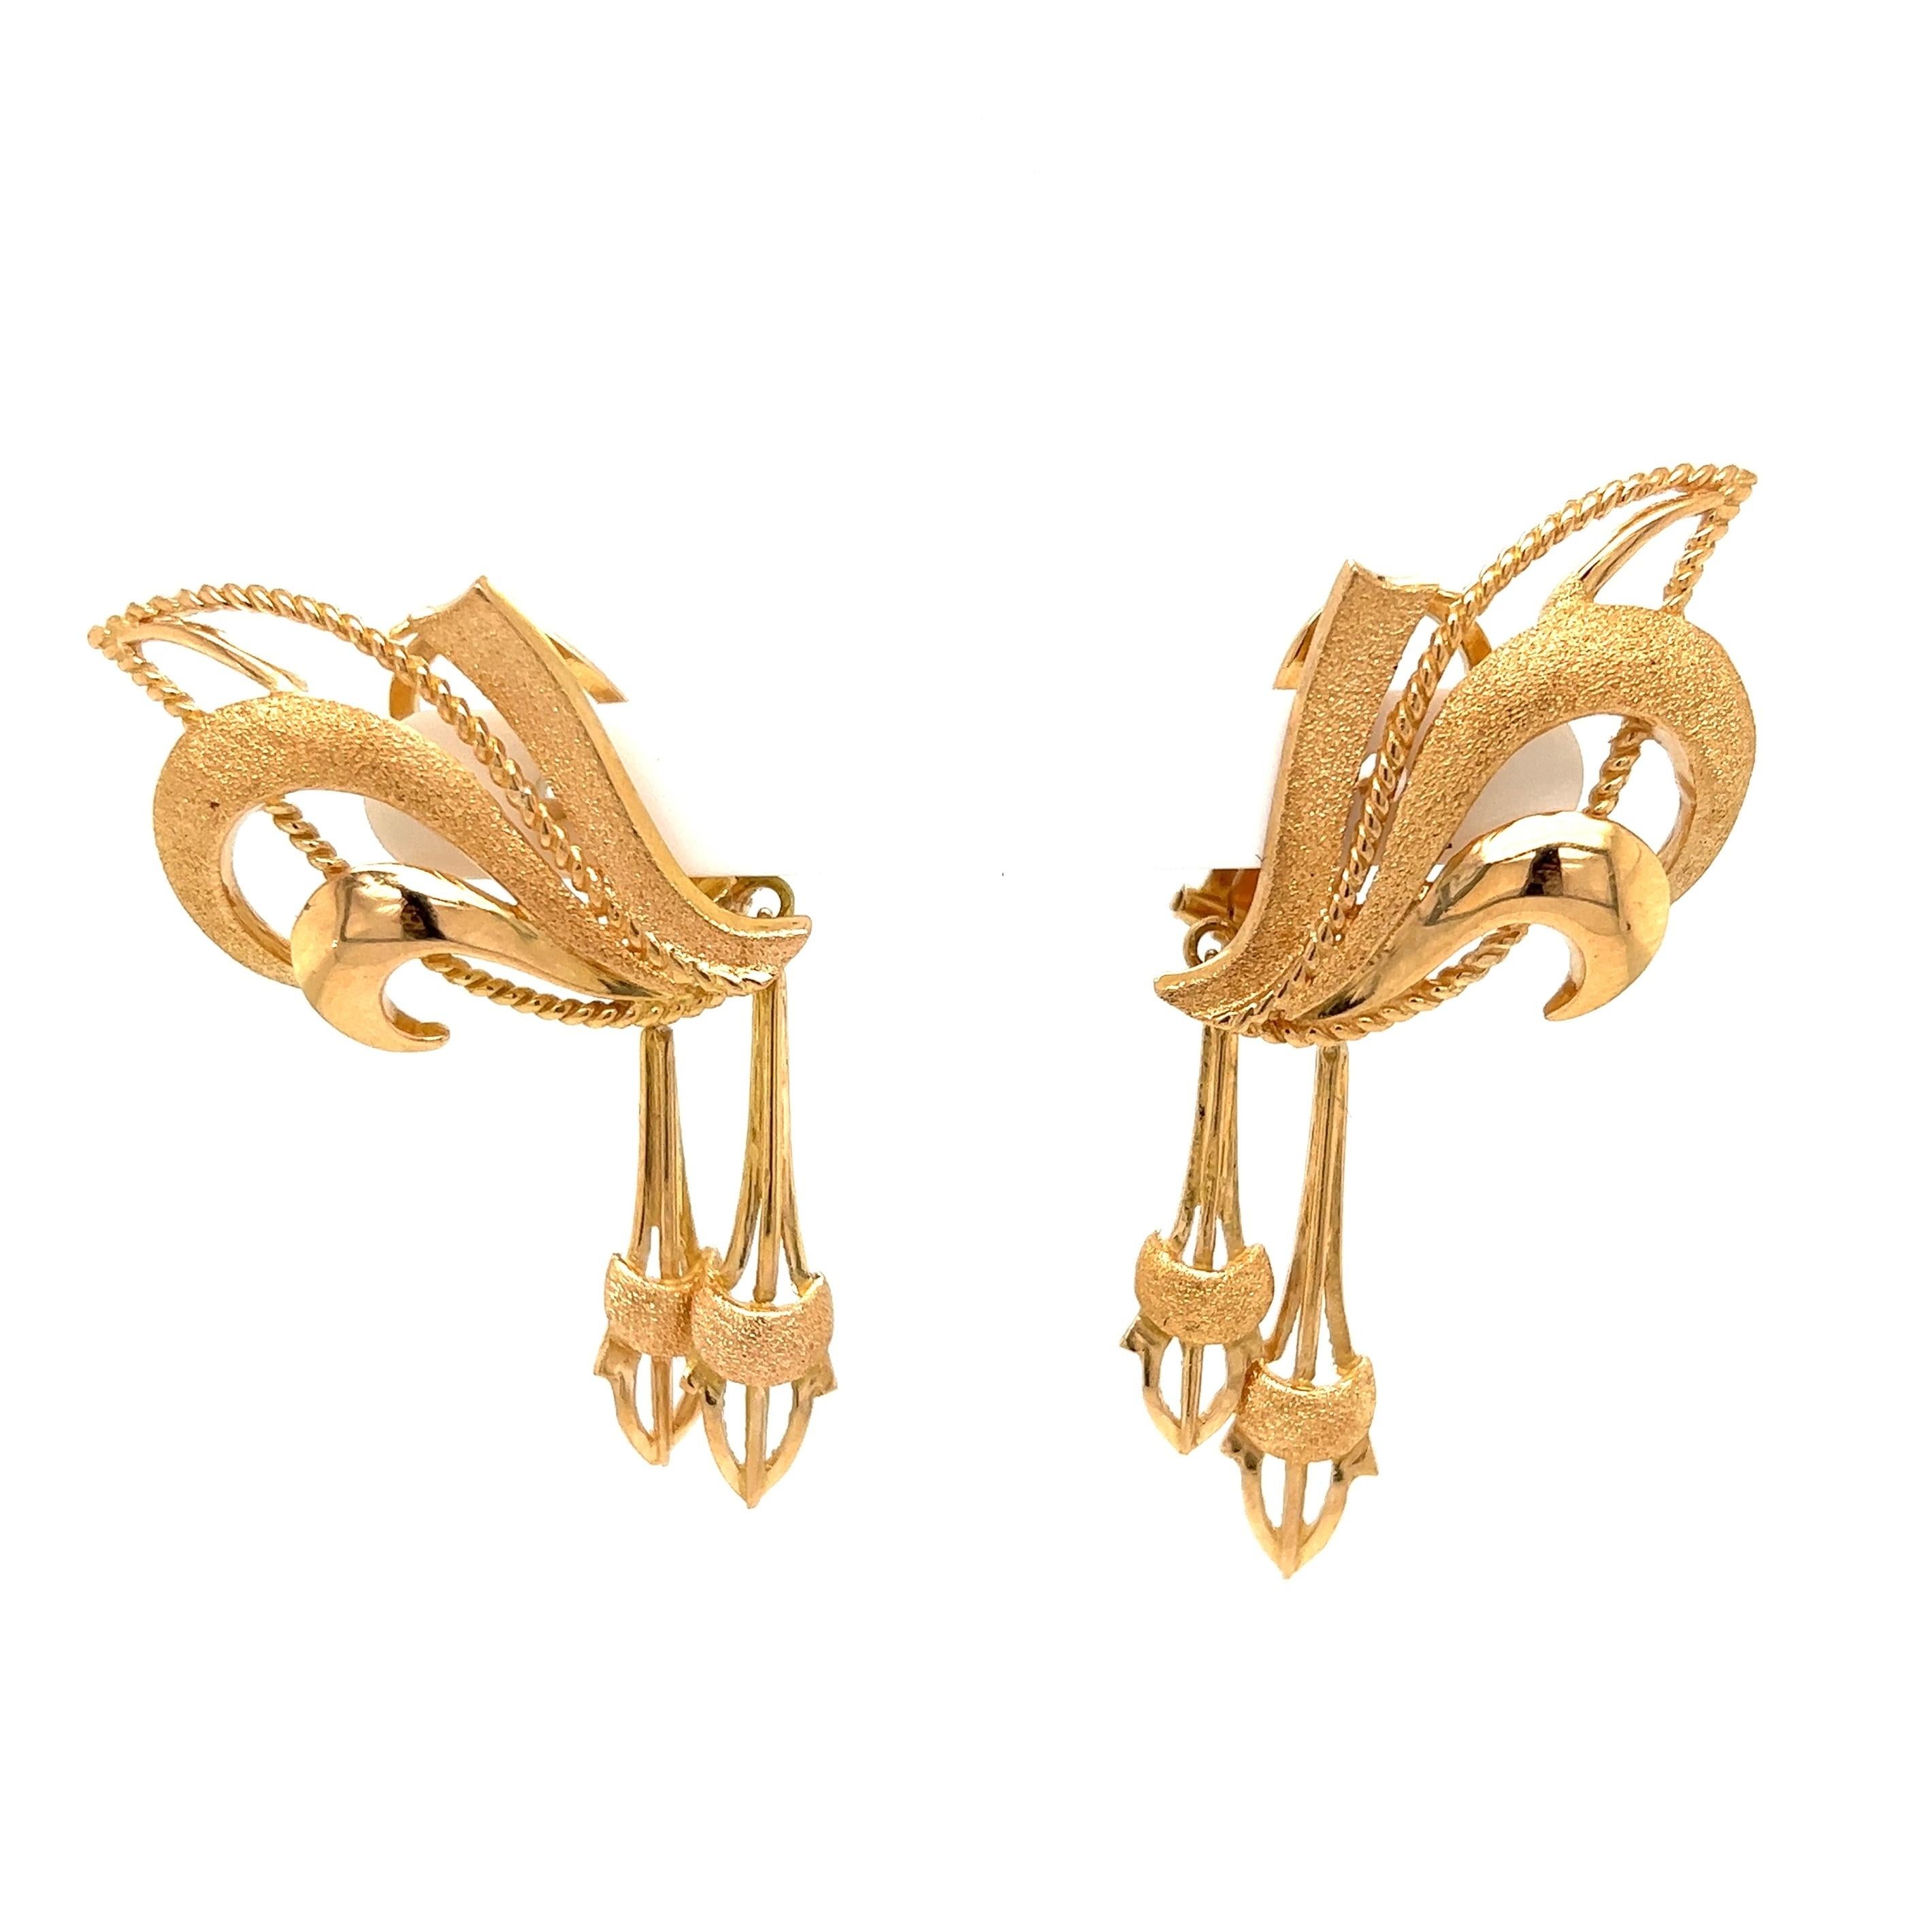 Schöne und stilvolle Retro-Gold-Ohrringe. Handgefertigt aus 18 Karat Roségold. Ca. 2.3